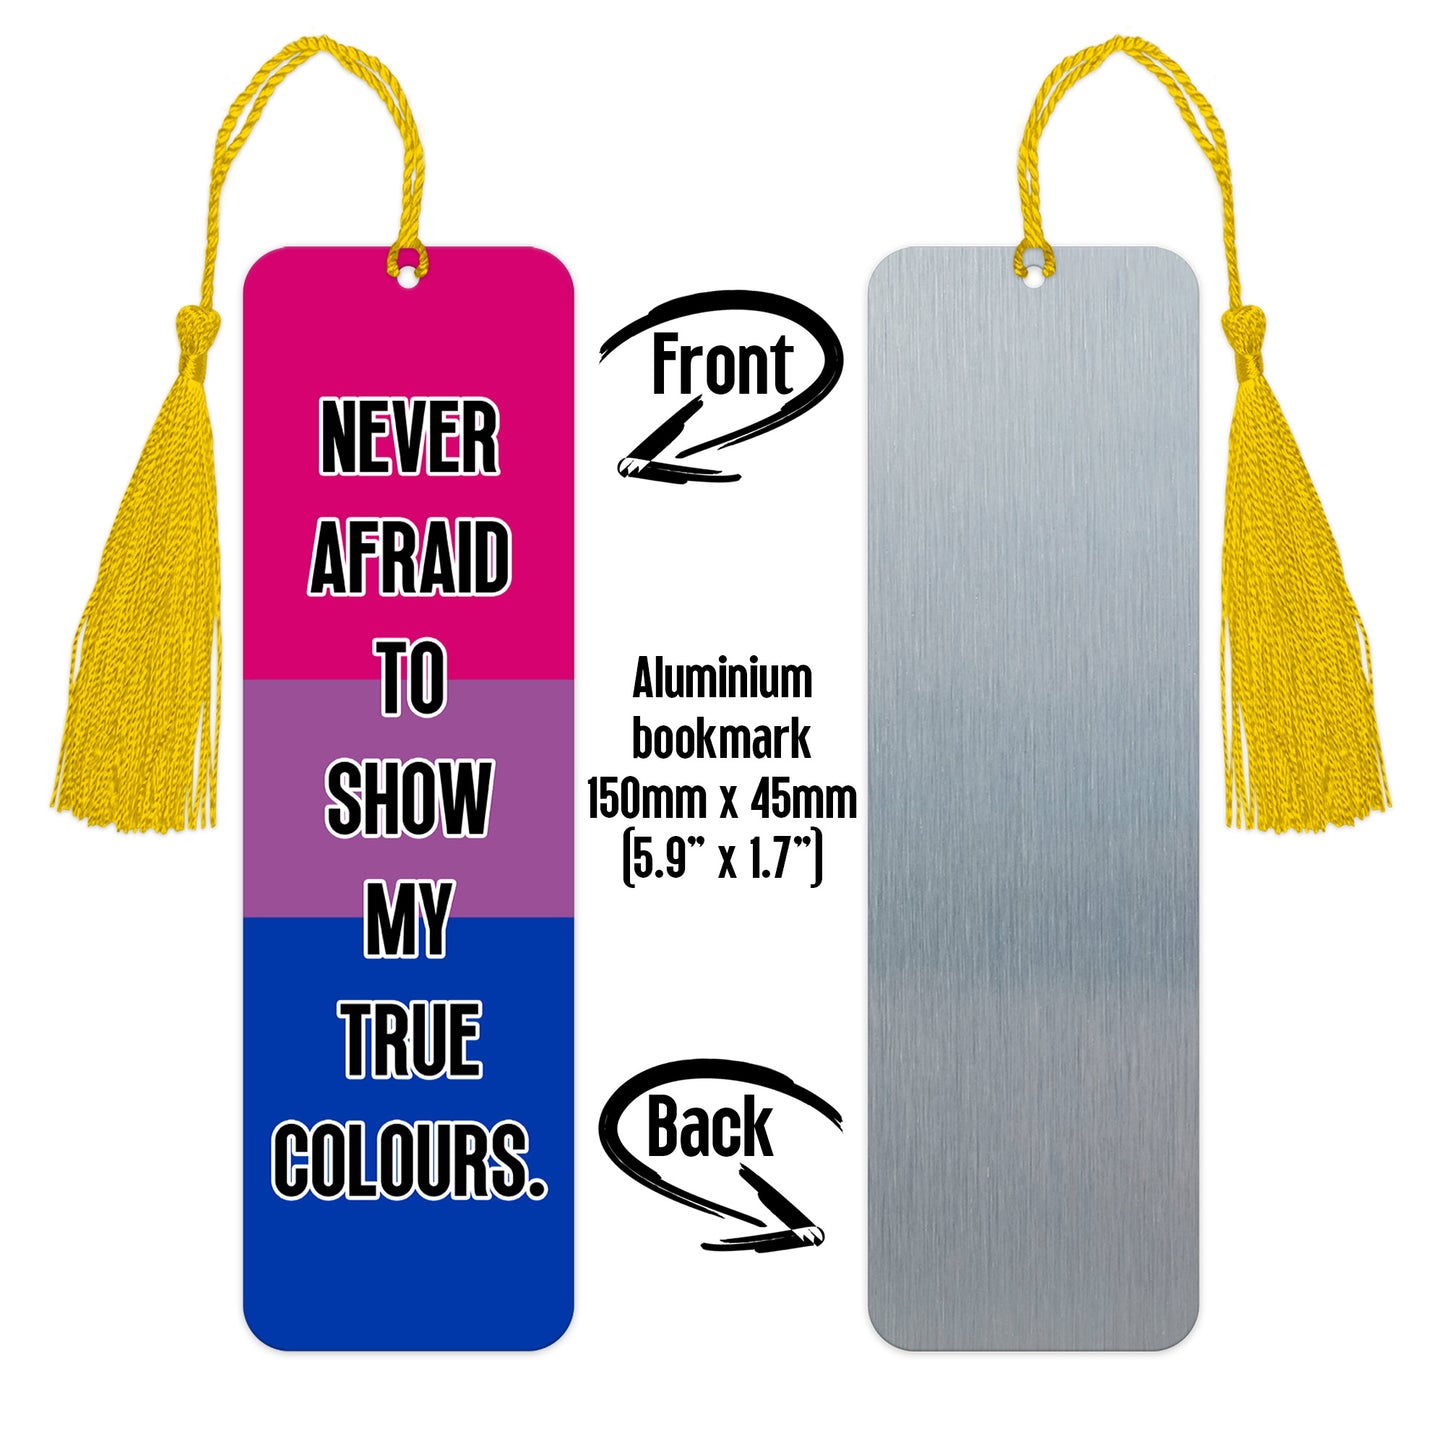 Bisexual pride luxury aluminium bookmark never afraid to show my true colours